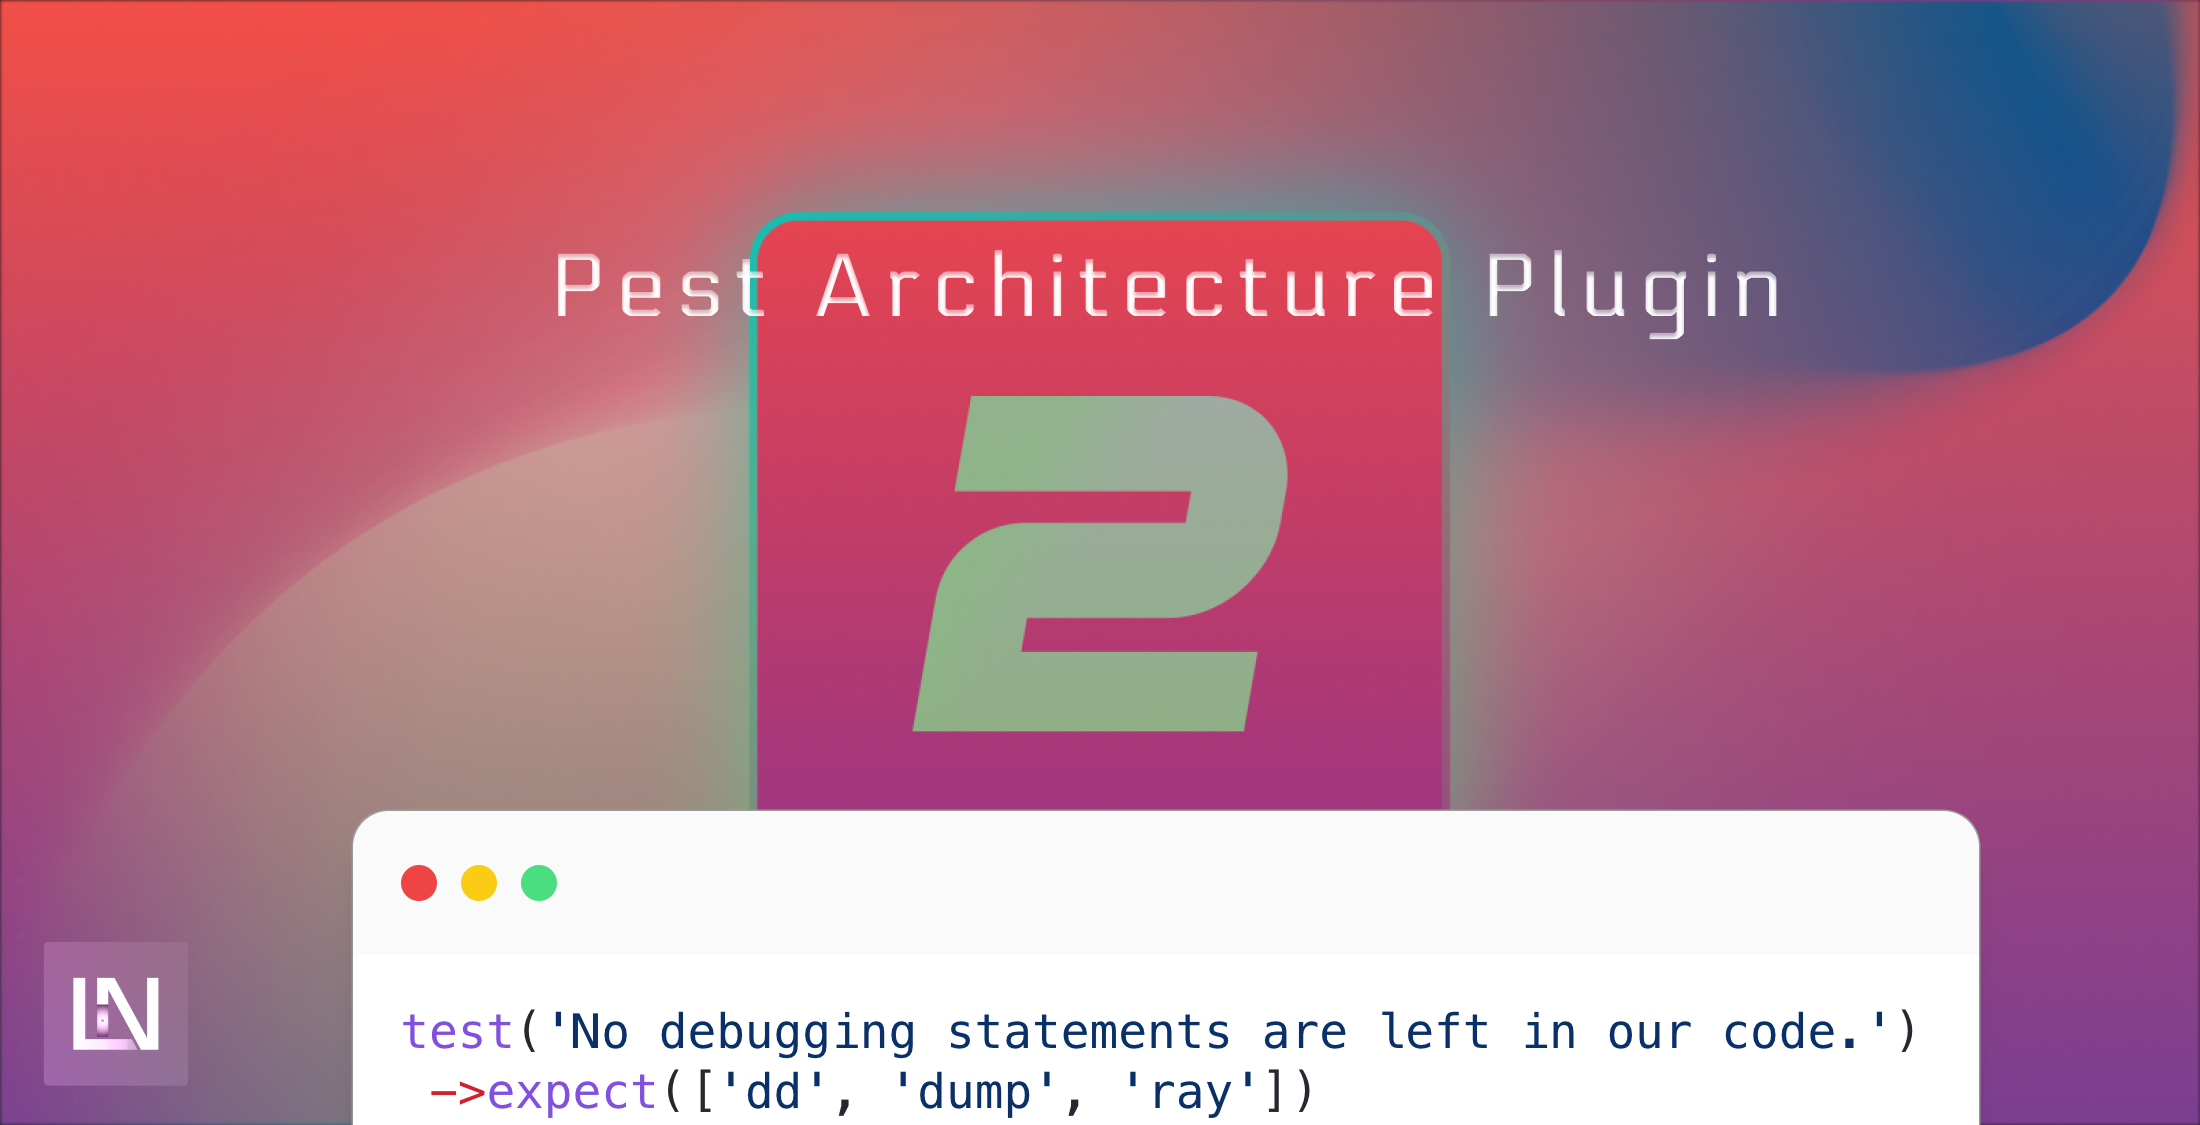 Pest Architecture Plugin image